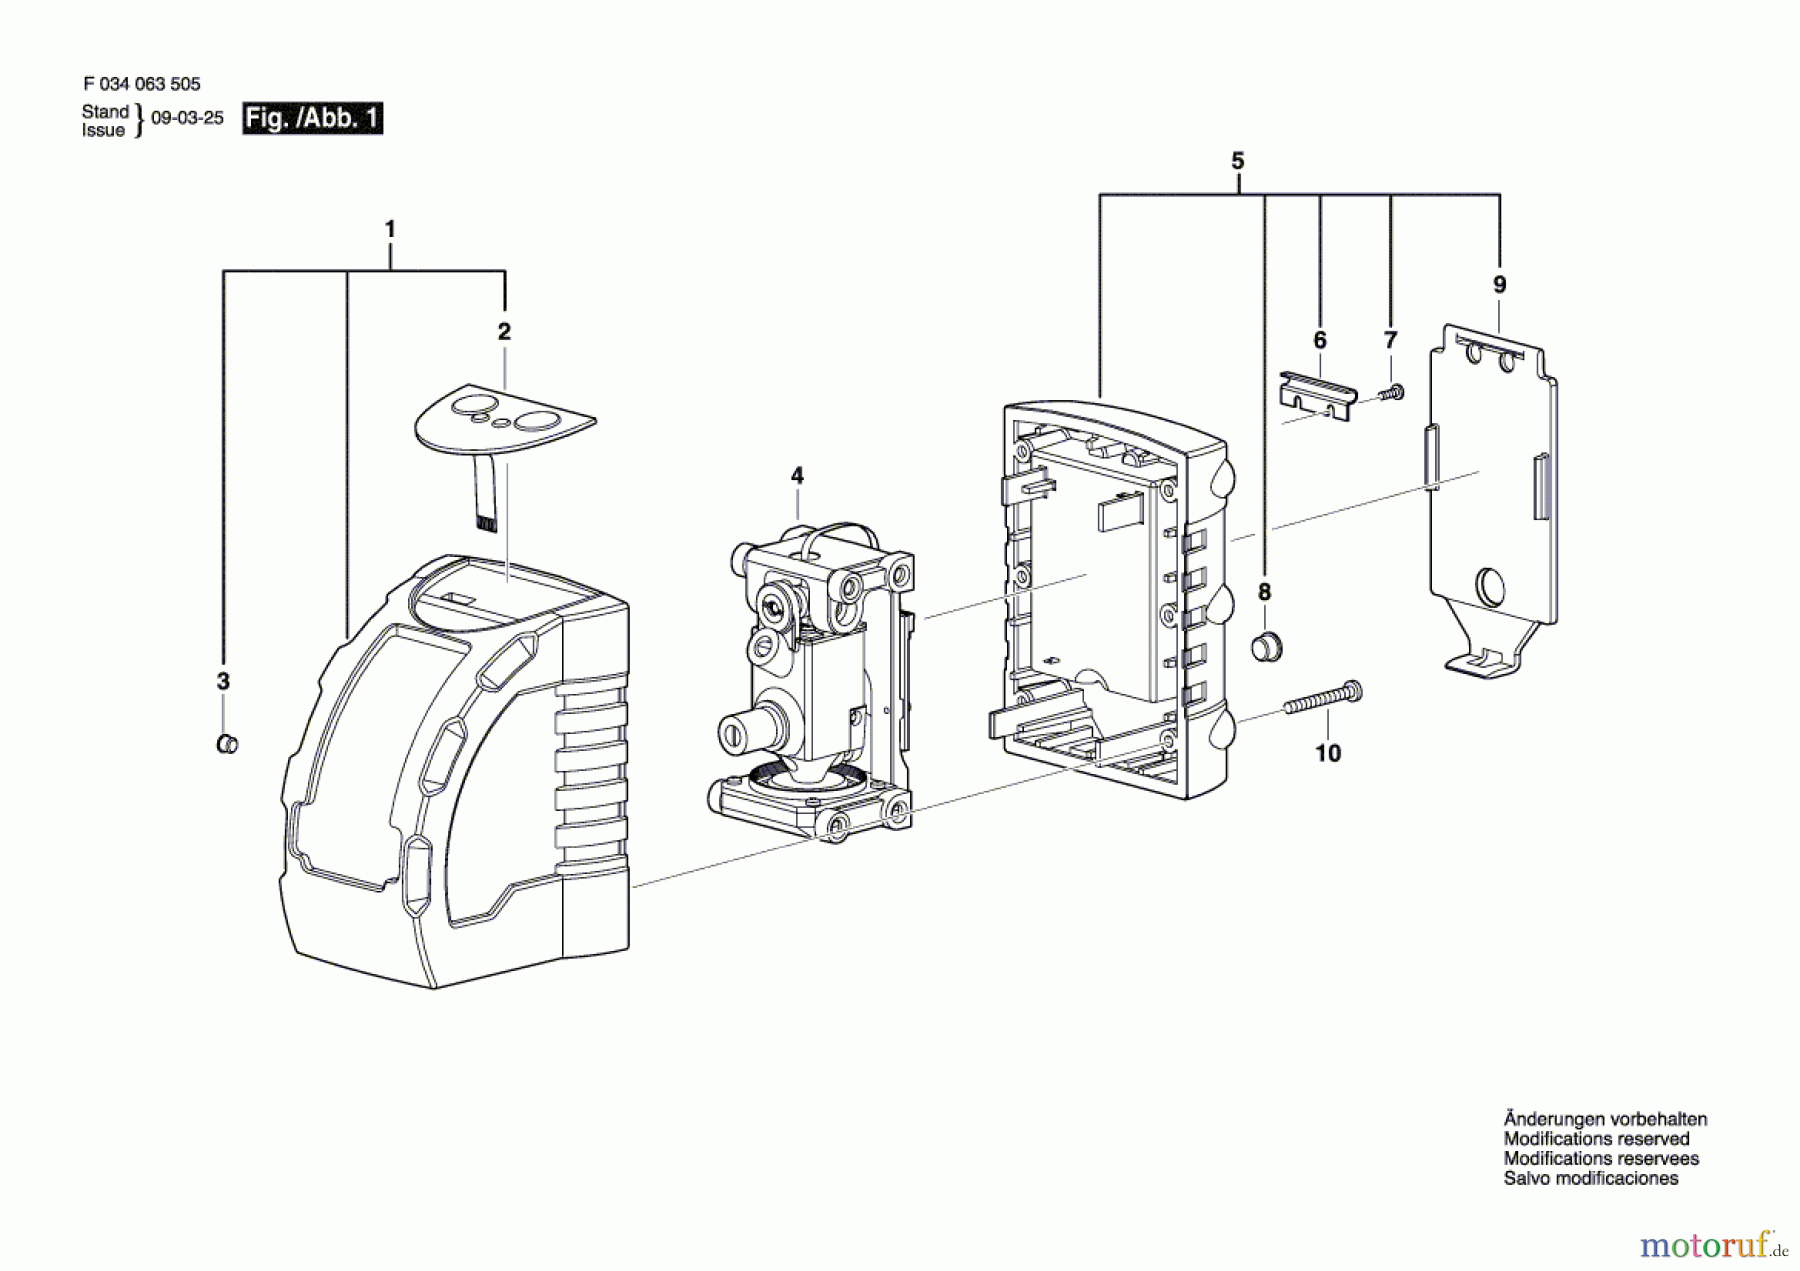  Bosch Werkzeug Linienlaser CLL06 Seite 1